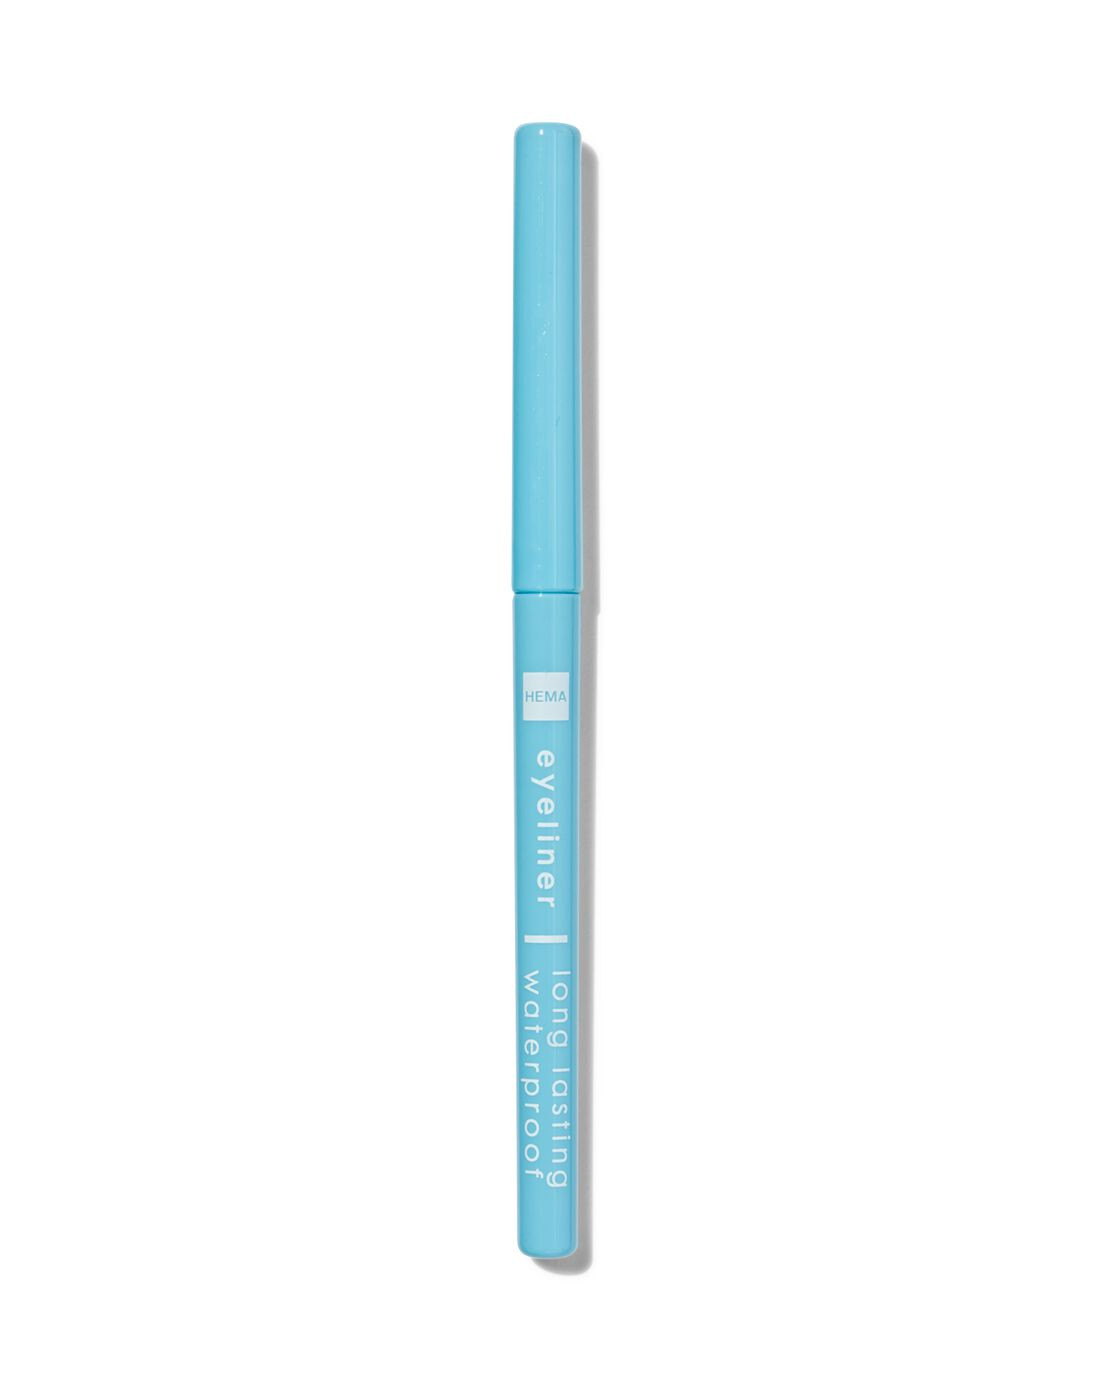 HEMA Perfect Eyeliner Waterproof 206 Soft Blue (blauw)